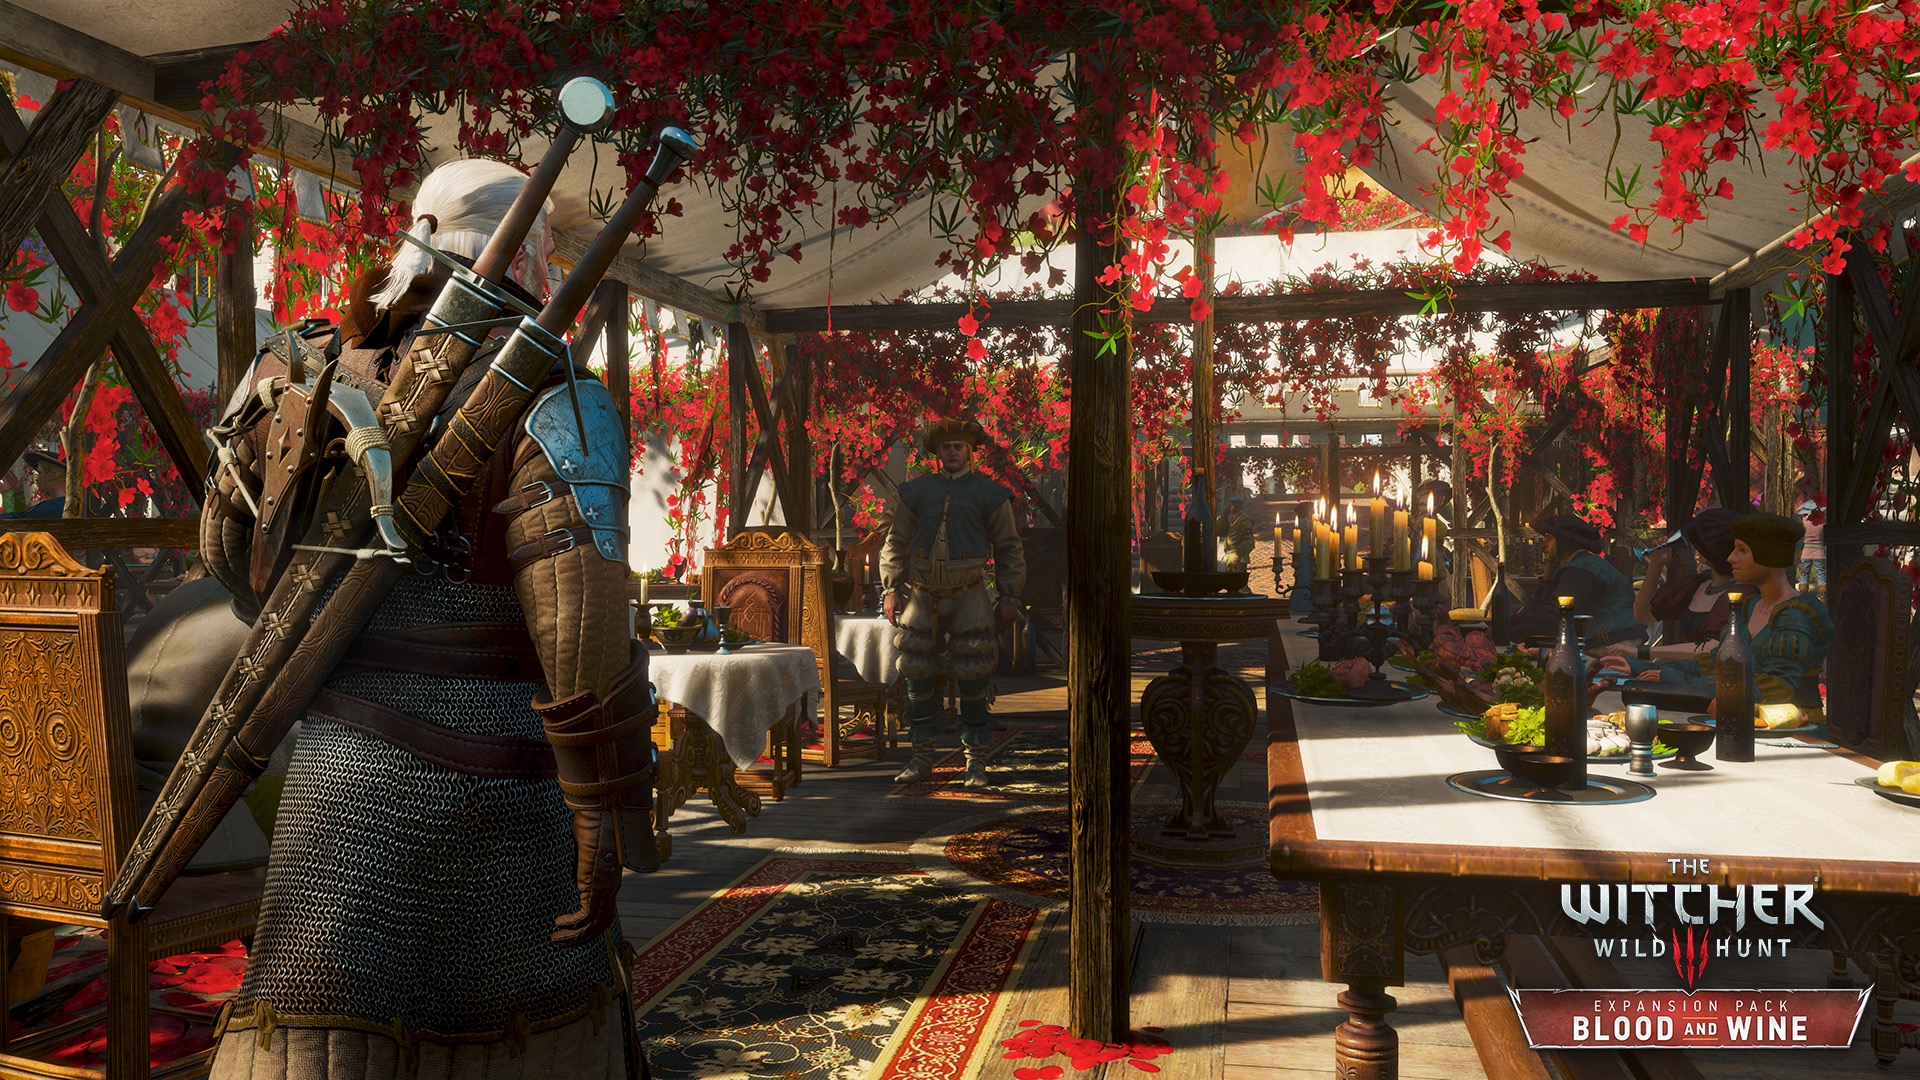 Geralt aura à visiter le fameux festival des vins de Toussaint au cours de ses aventures